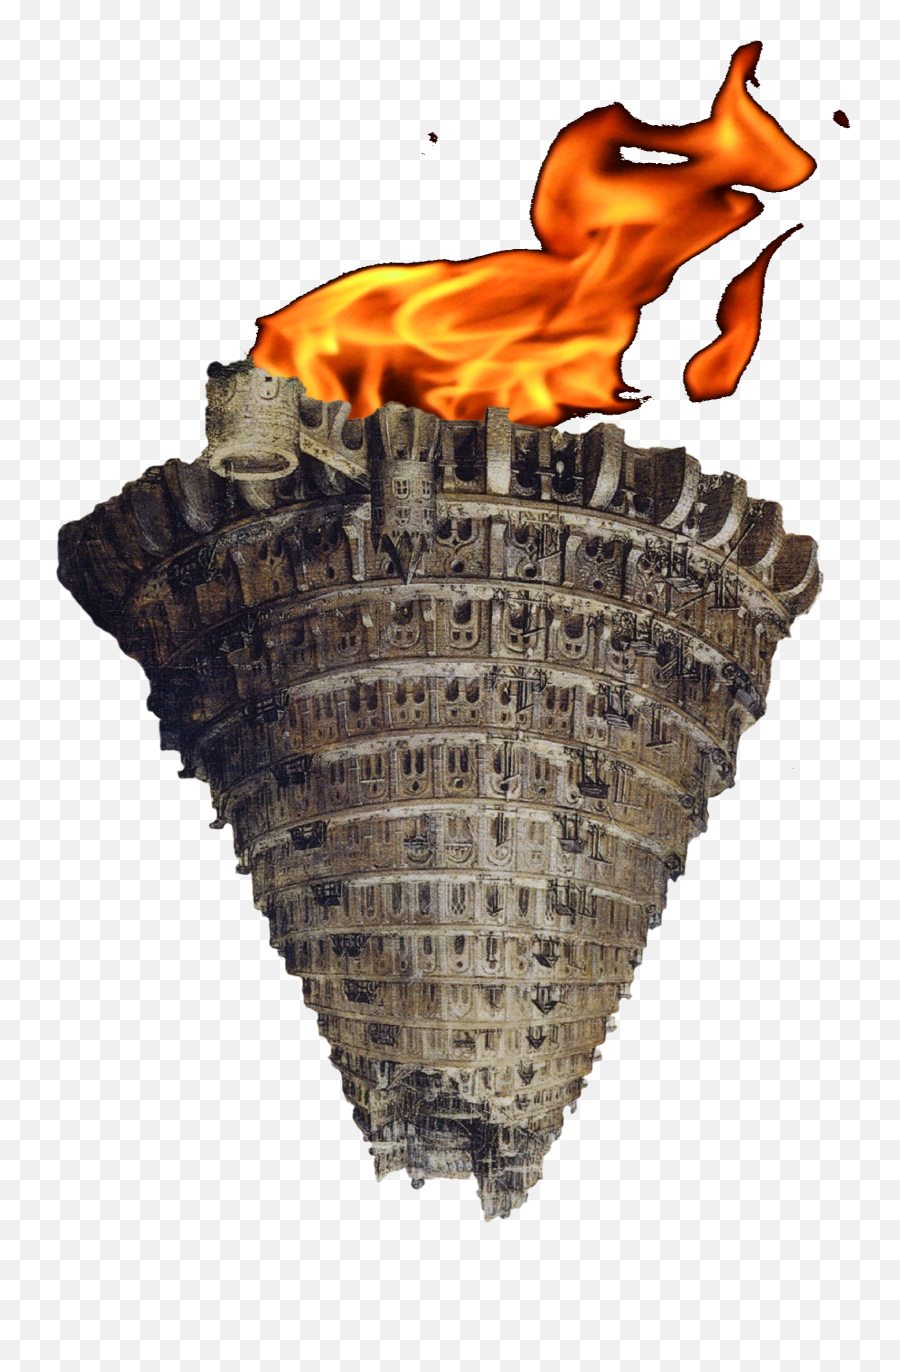 Image Babel Inverted - Lcms Pastorsu0027 Resources Tower Of Babel Inverted Emoji,Pentecost Clipart